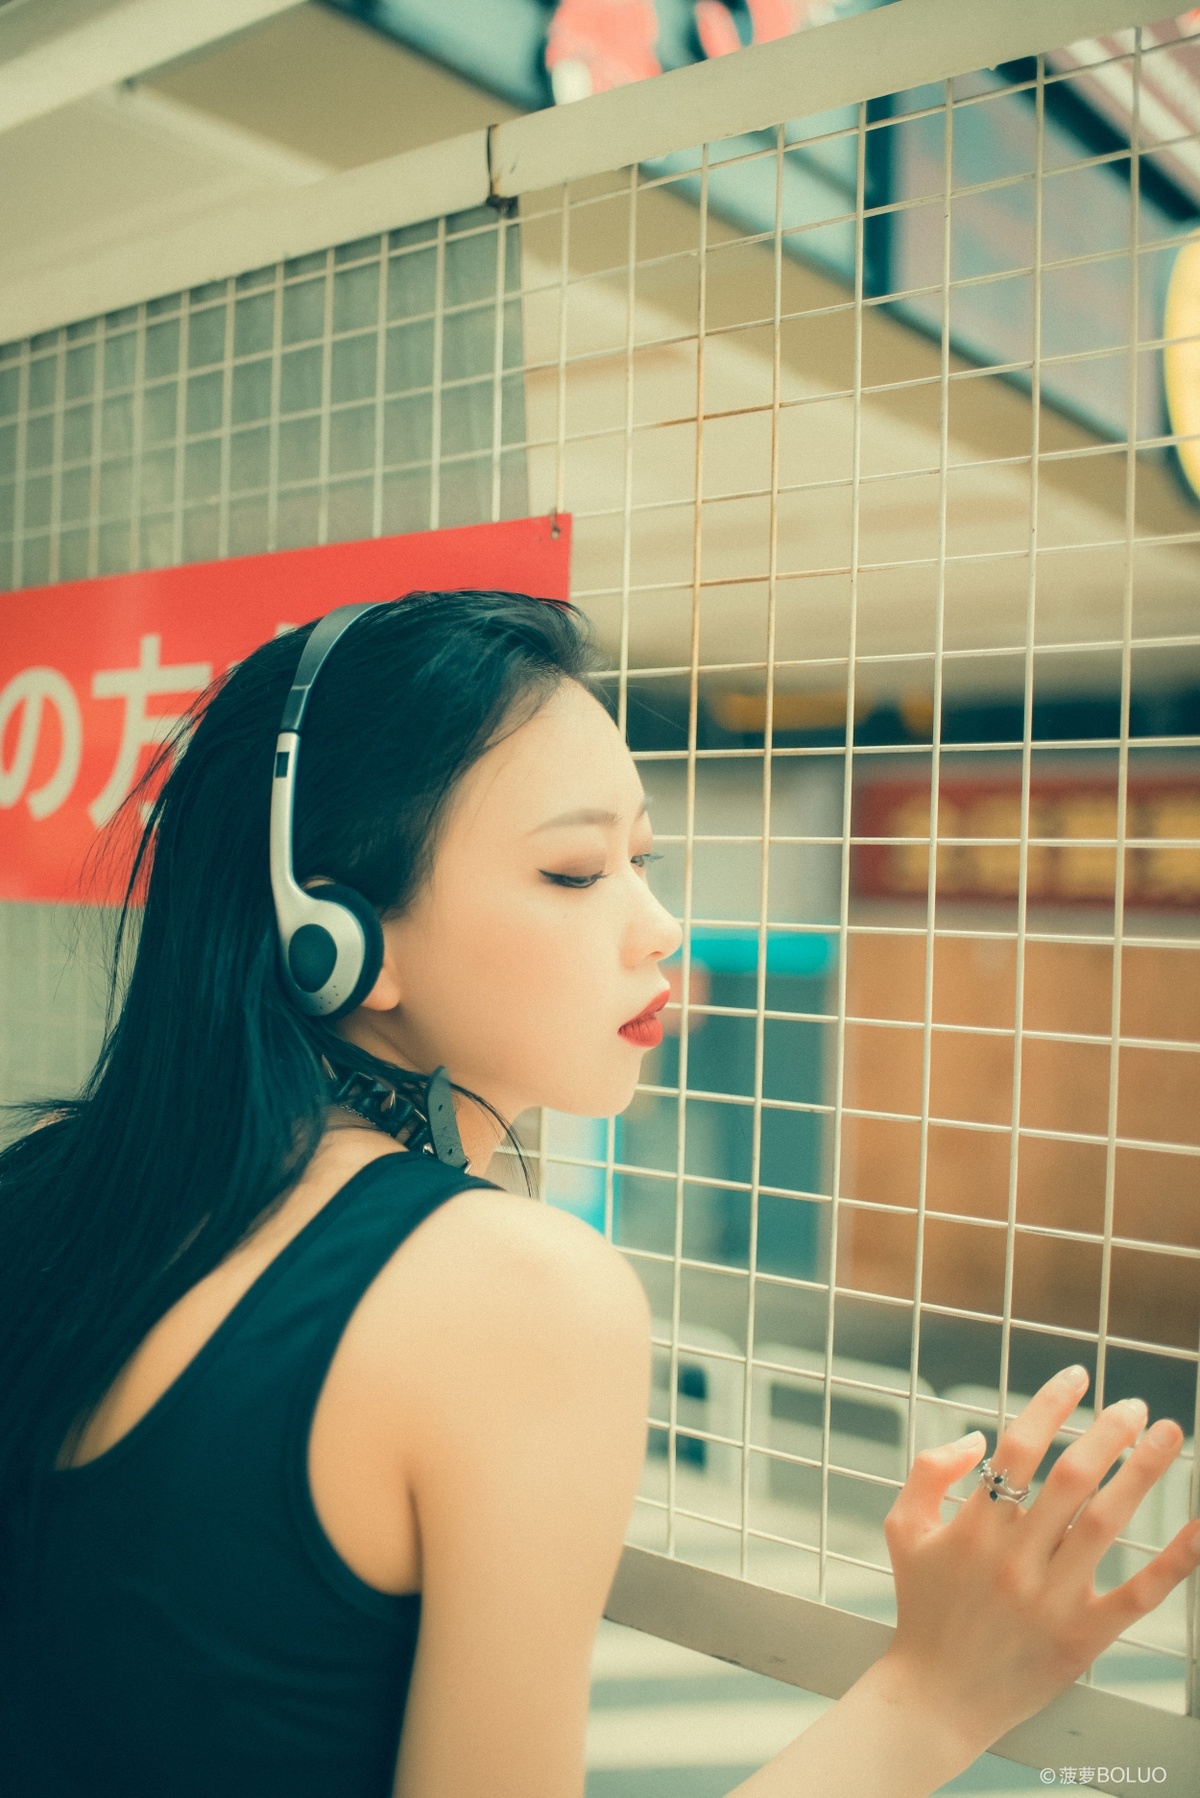 一位年轻女子戴着黑色耳机站在地铁站 同时听音乐并抽烟。